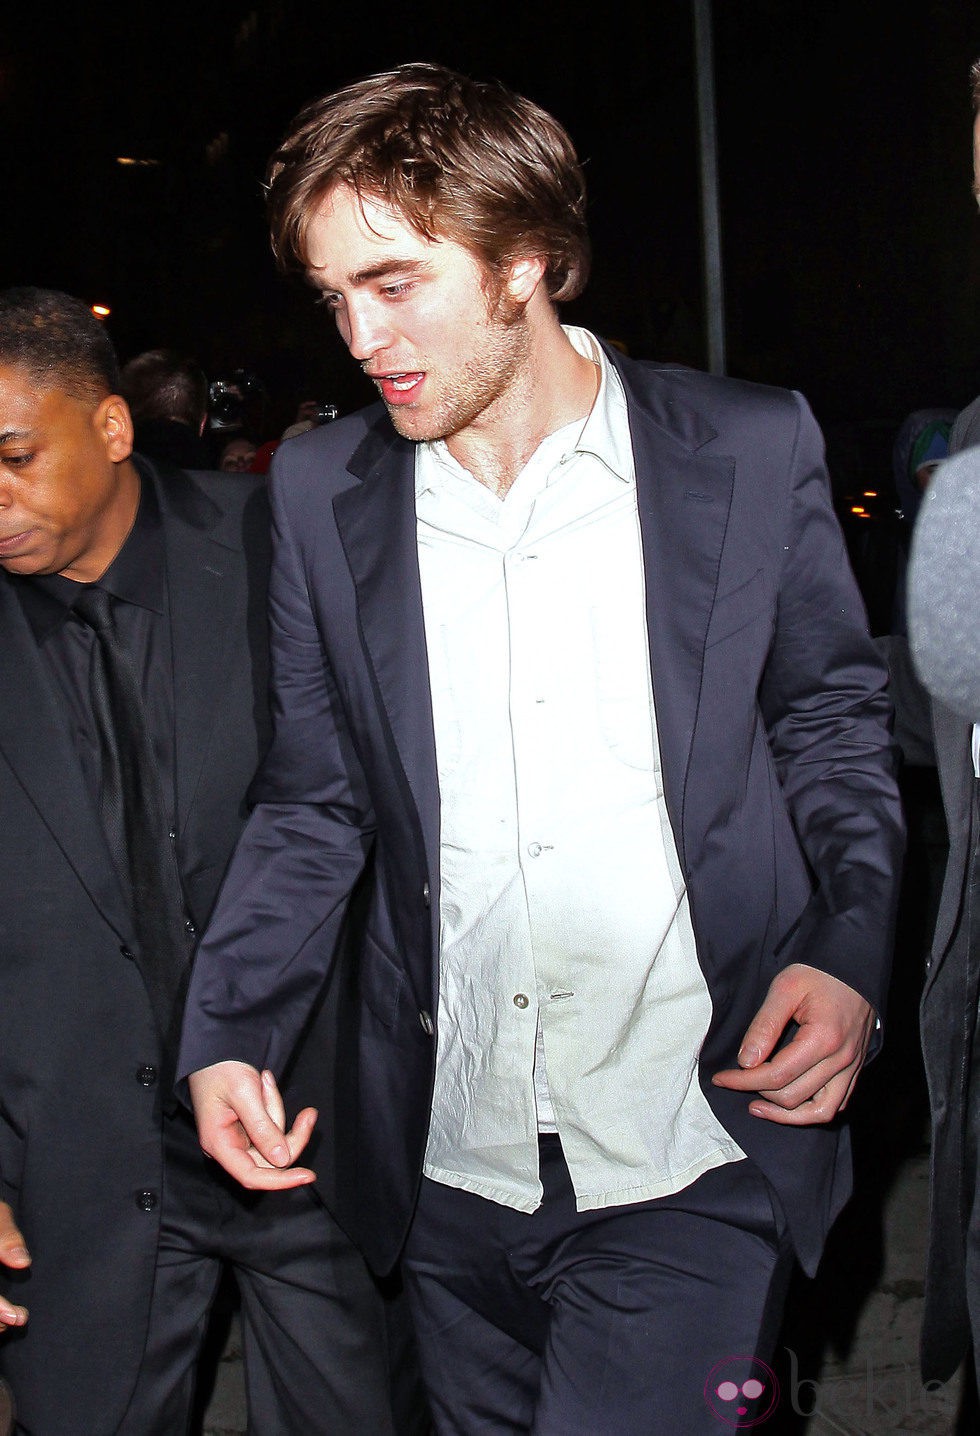 Robert Pattinson camina borracho por las calles de Nueva York